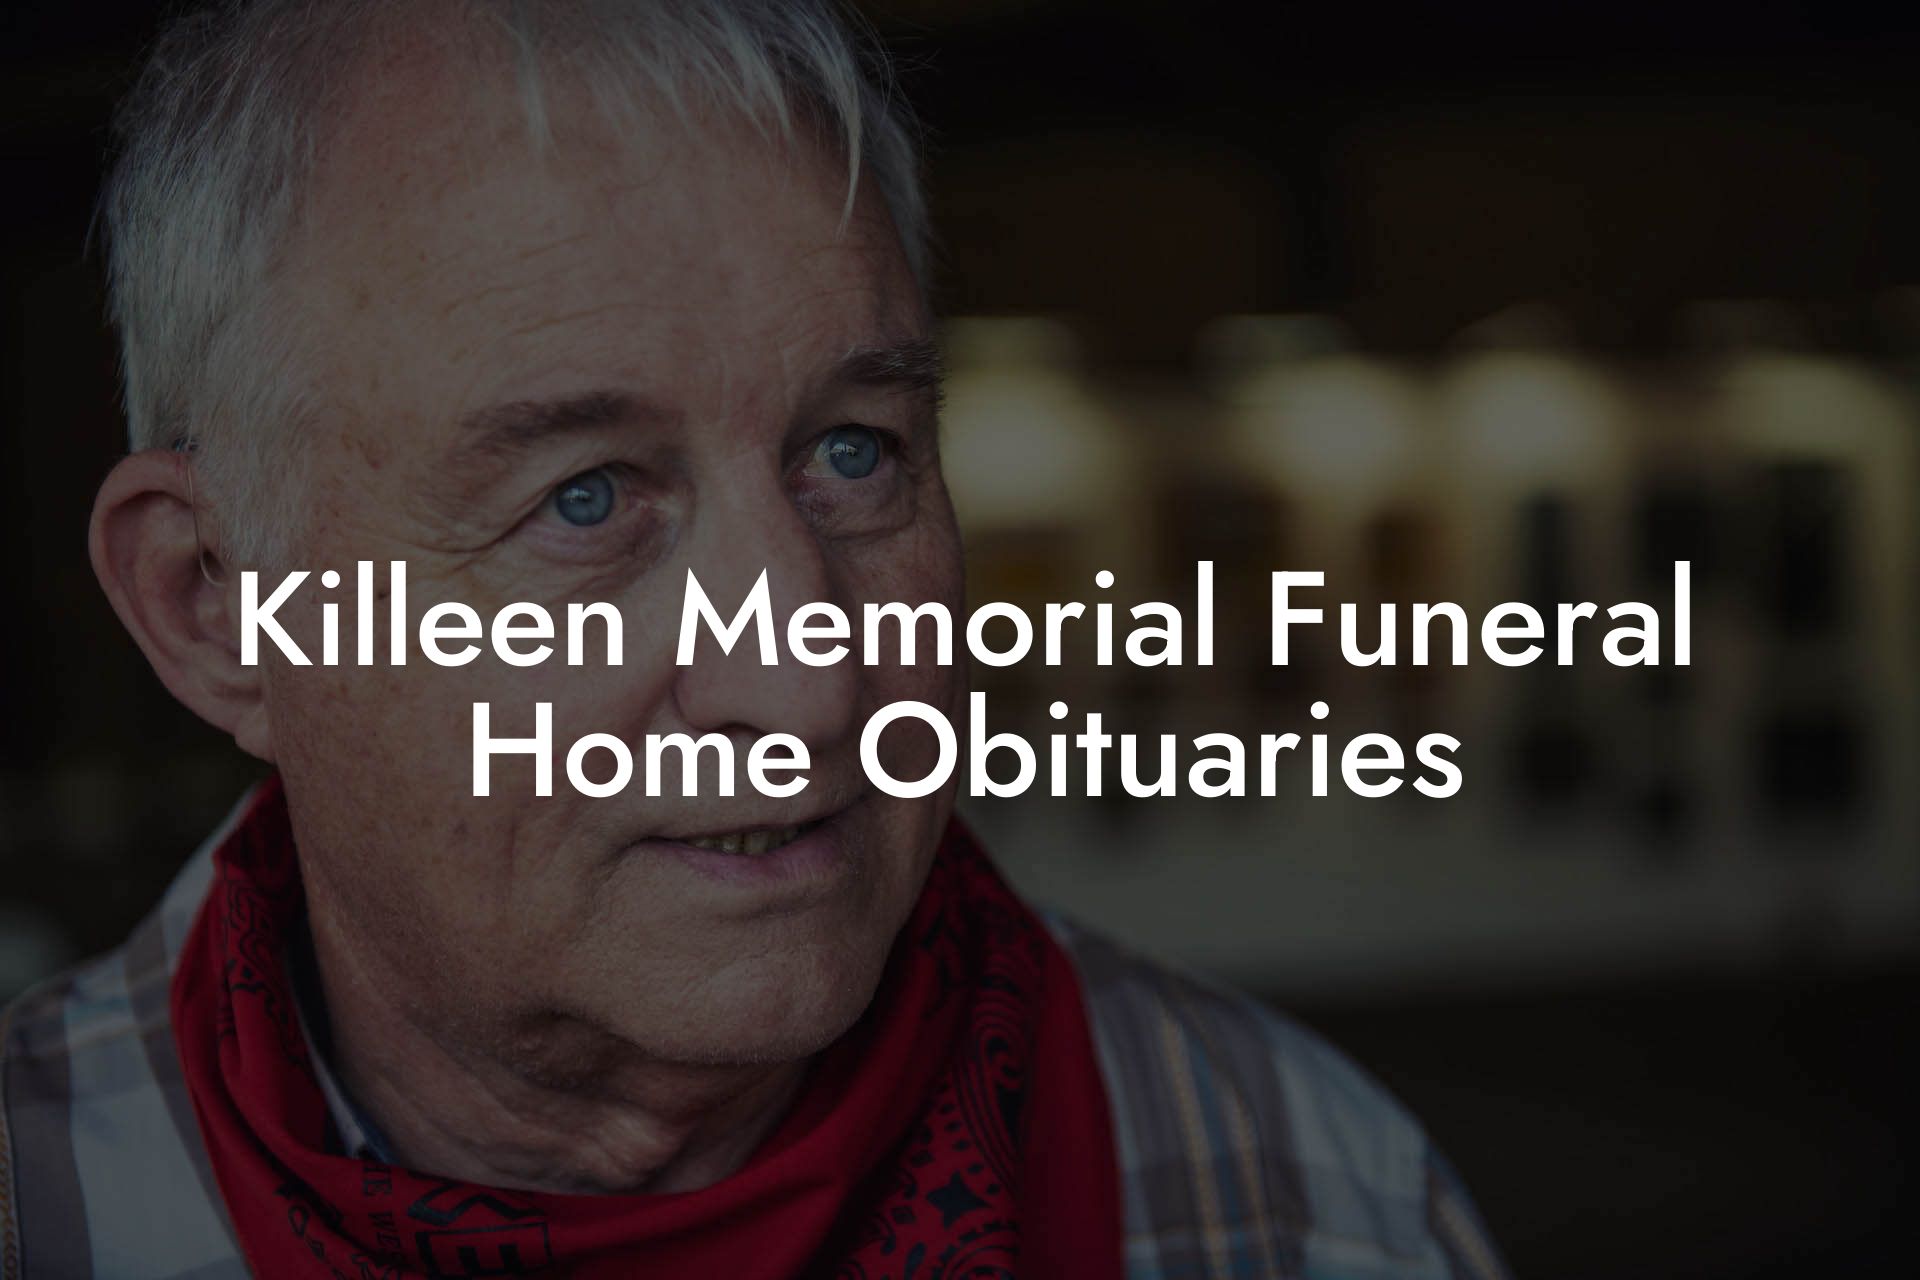 Killeen Memorial Funeral Home Obituaries